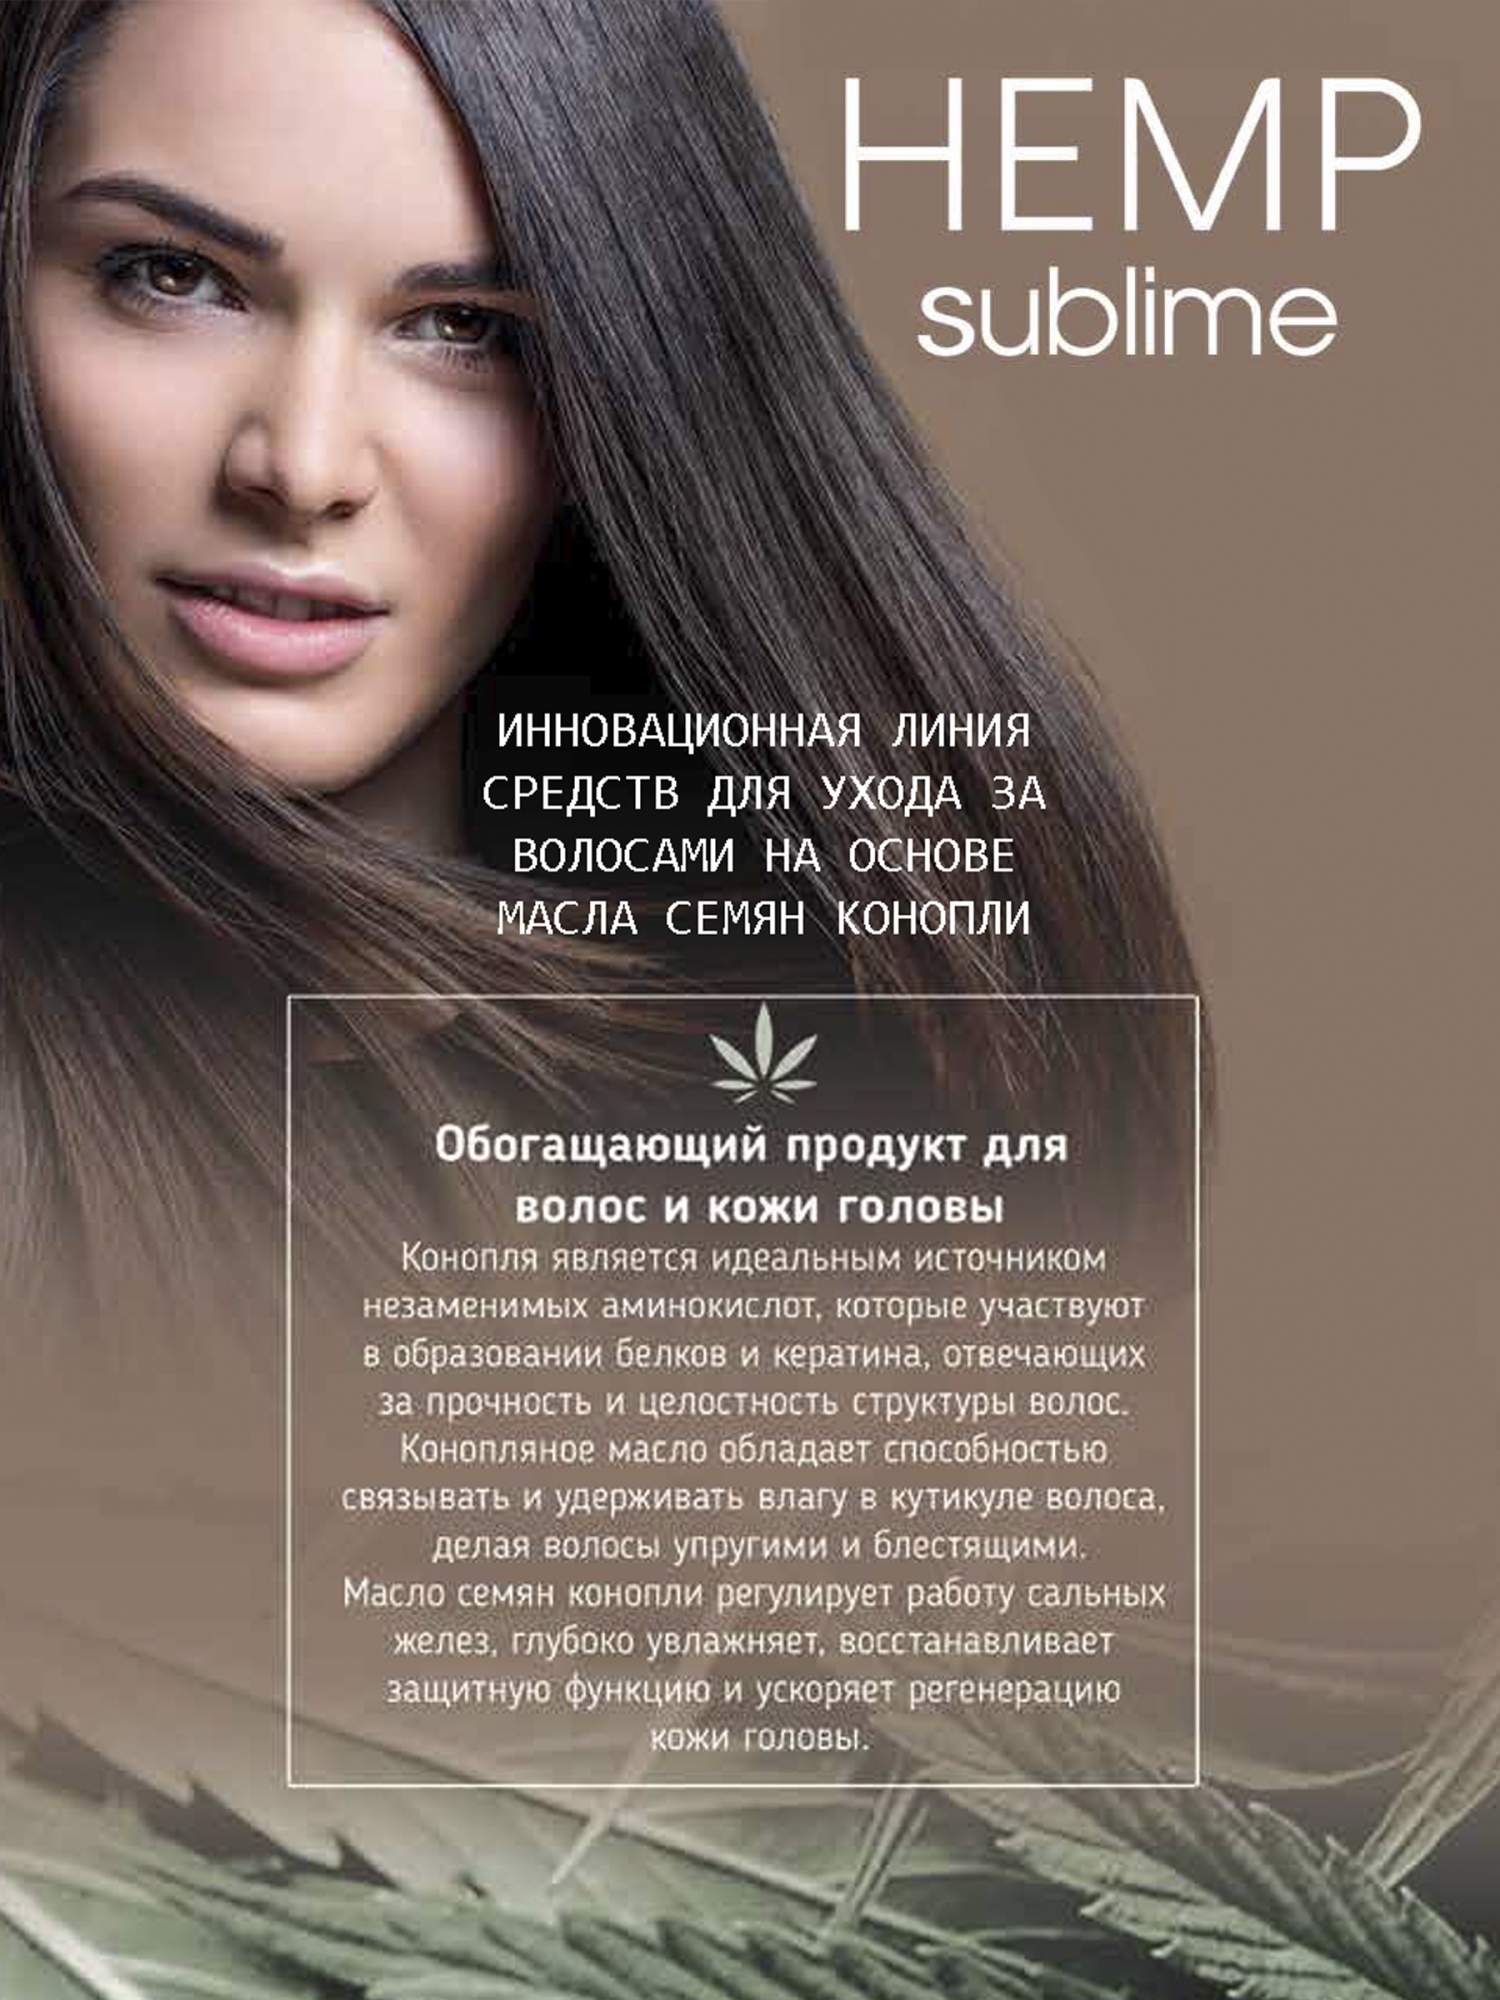 Эликсир Selective Professional восстанавливающий для всех типов волос 100мл, HEMP SUBLIME